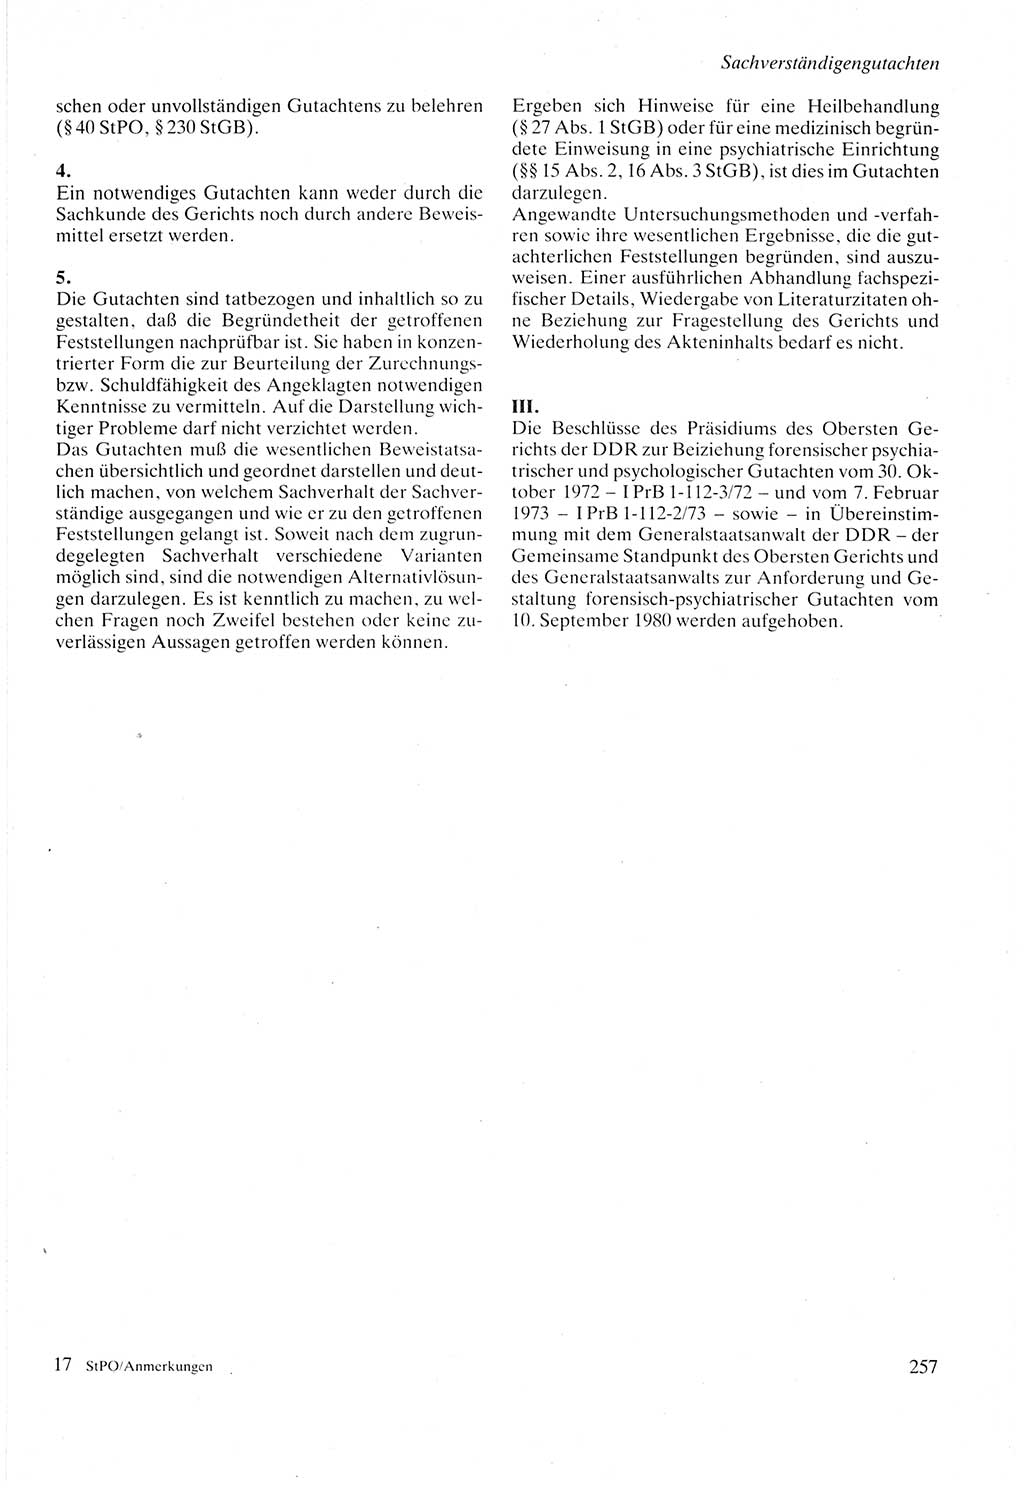 Strafprozeßordnung (StPO) der Deutschen Demokratischen Republik (DDR) sowie angrenzende Gesetze und Bestimmungen 1987, Seite 257 (StPO DDR Ges. Best. 1987, S. 257)